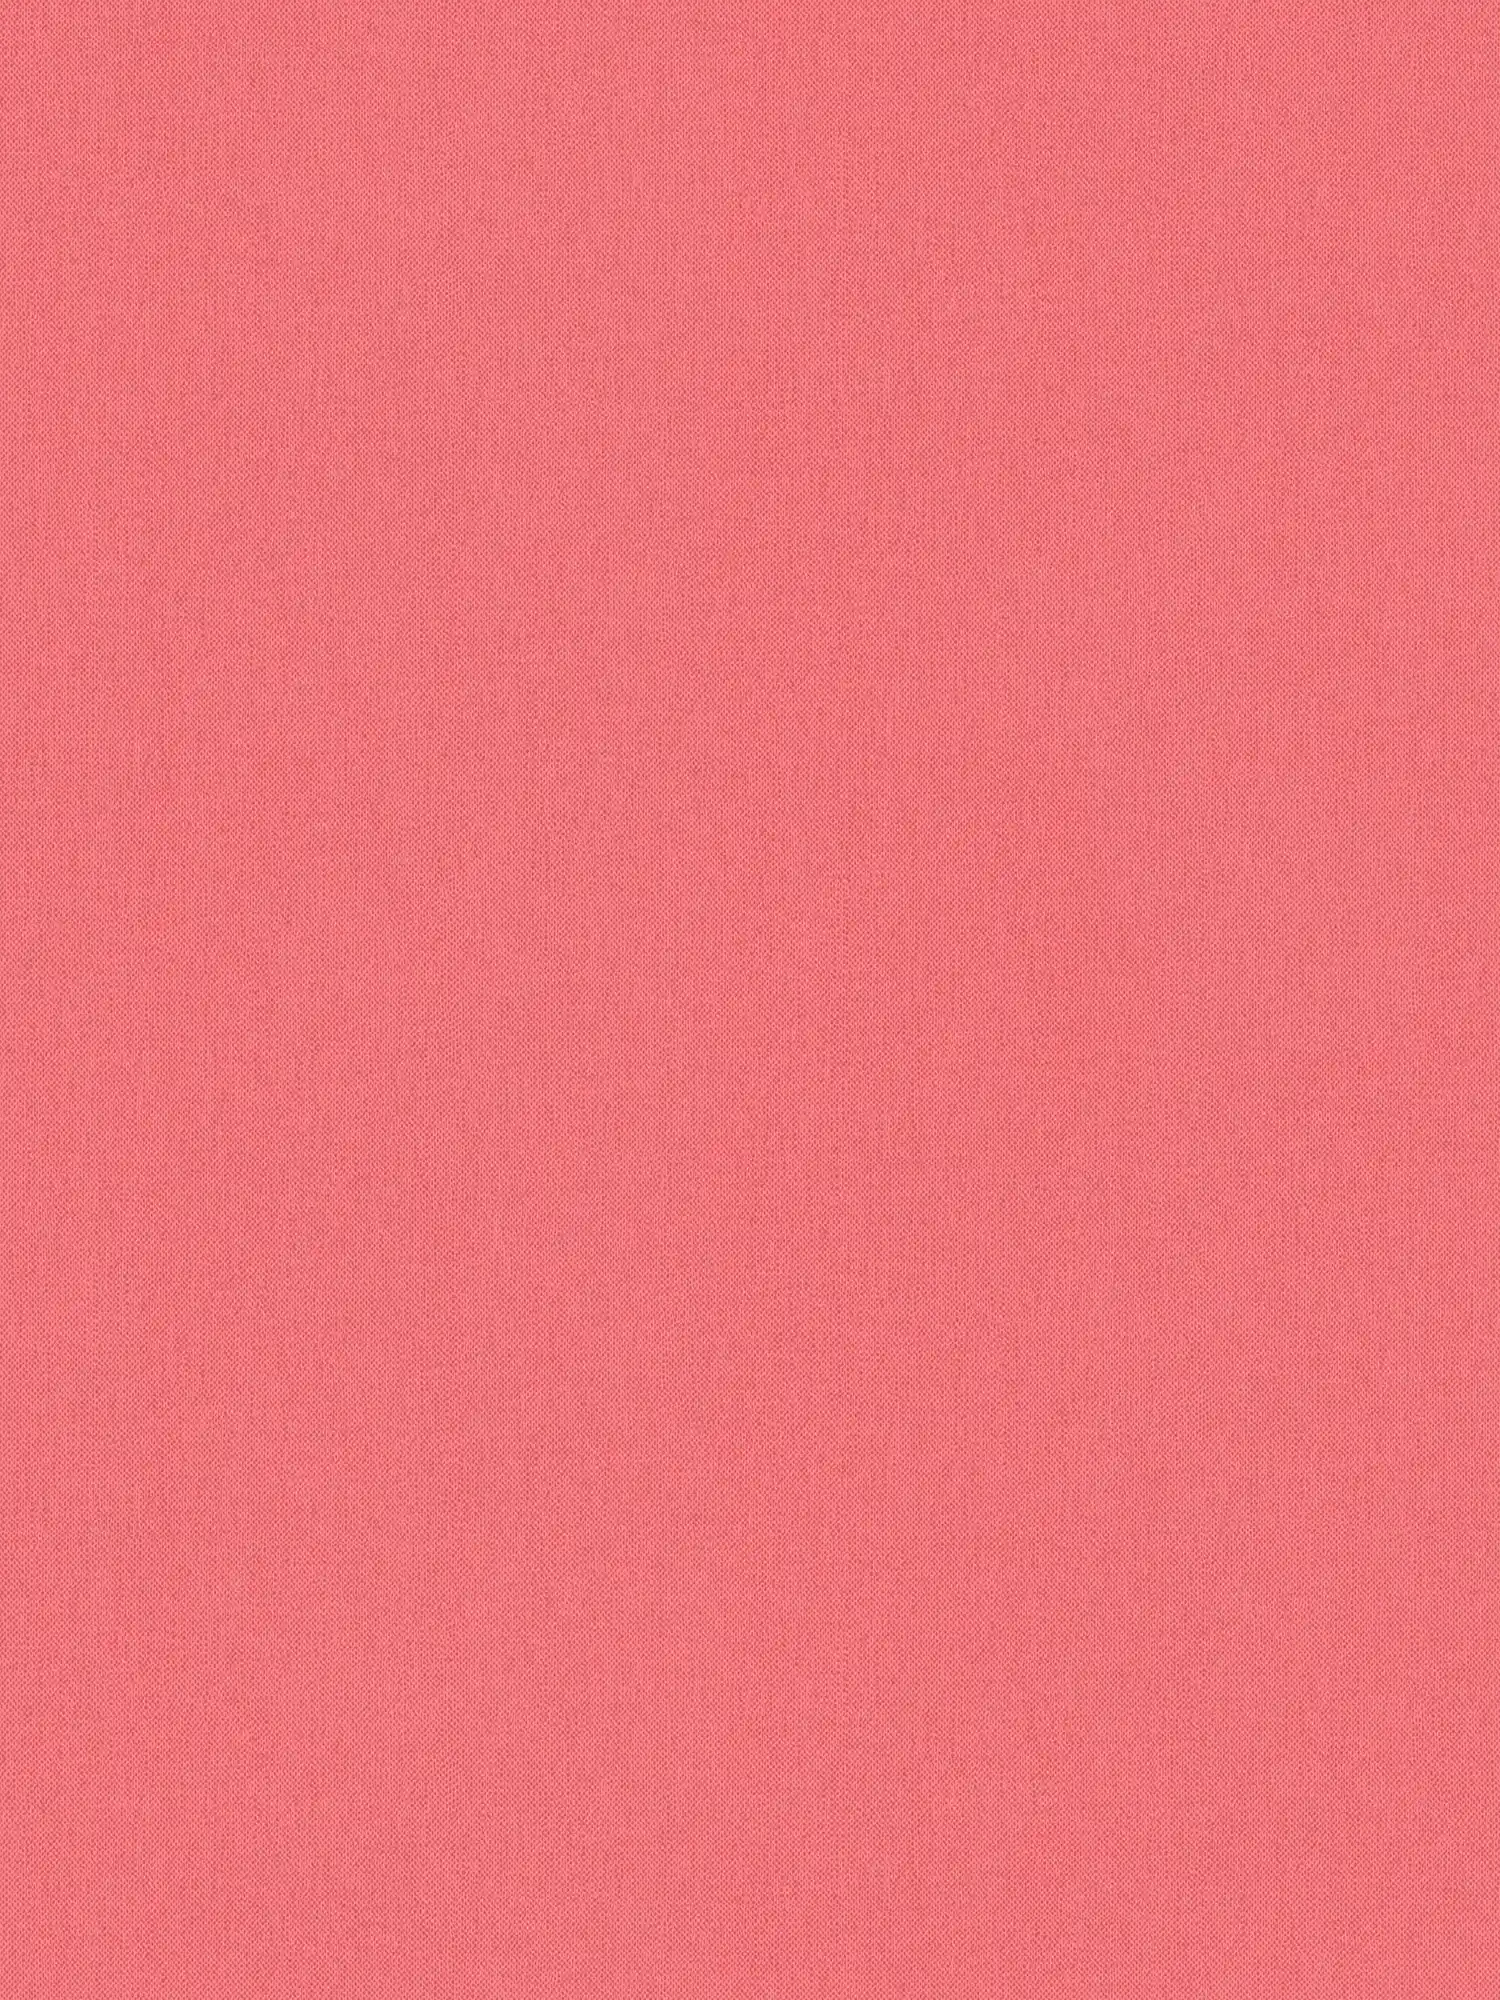 Papier peint saumon & rose avec structure lin uni pour chambre de jeune fille
